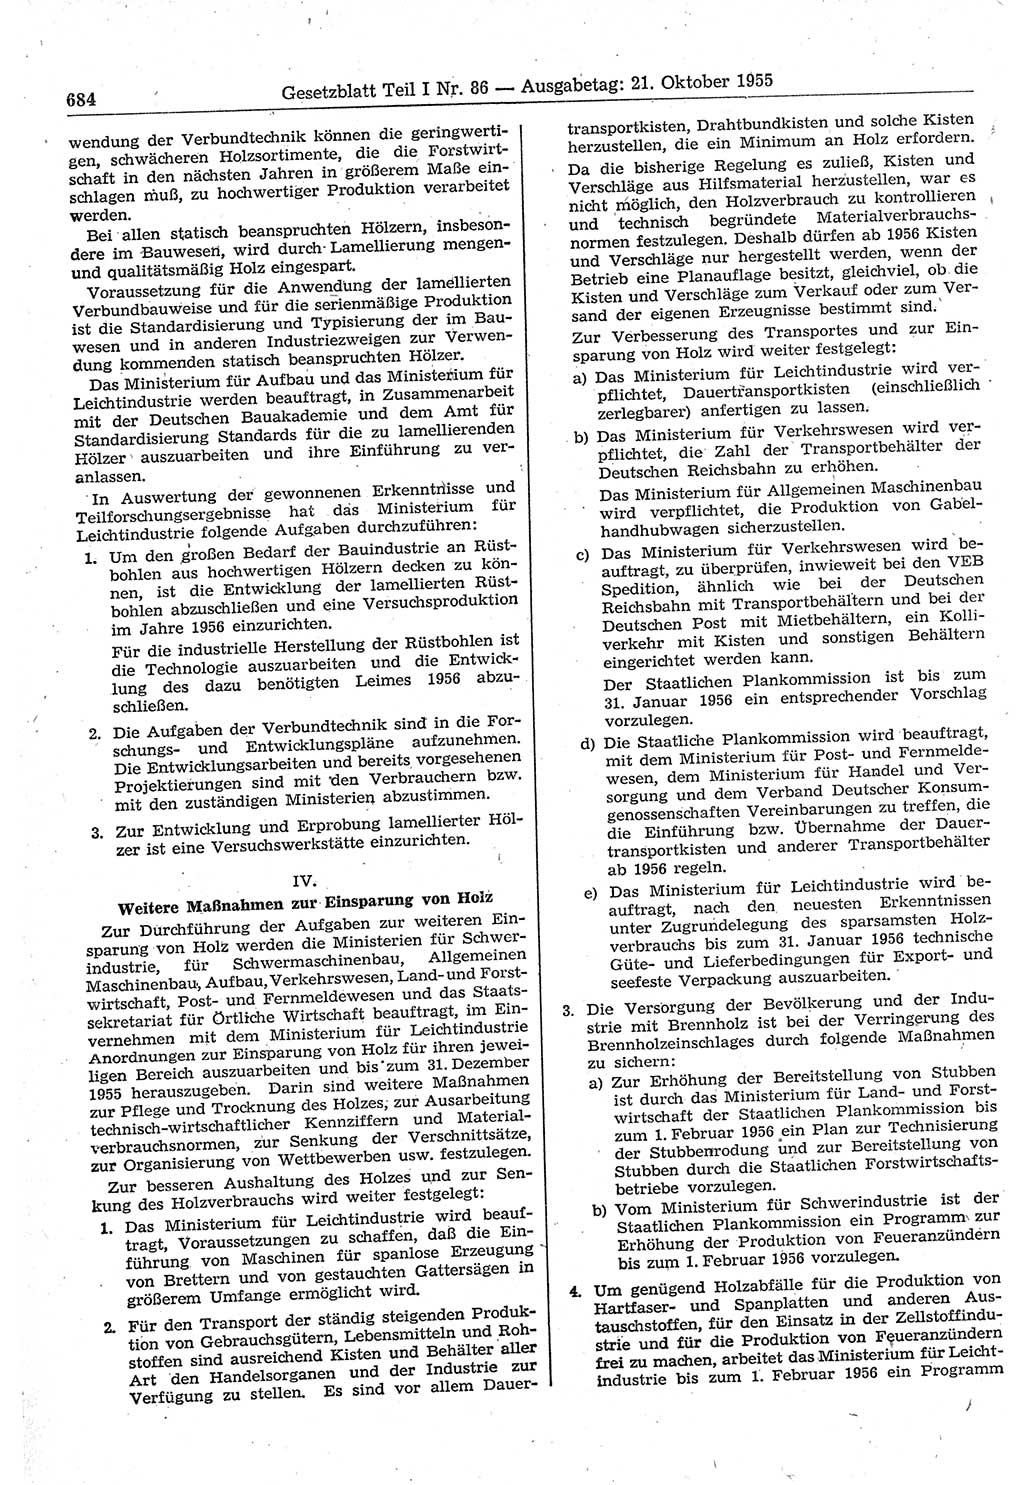 Gesetzblatt (GBl.) der Deutschen Demokratischen Republik (DDR) Teil Ⅰ 1955, Seite 684 (GBl. DDR Ⅰ 1955, S. 684)